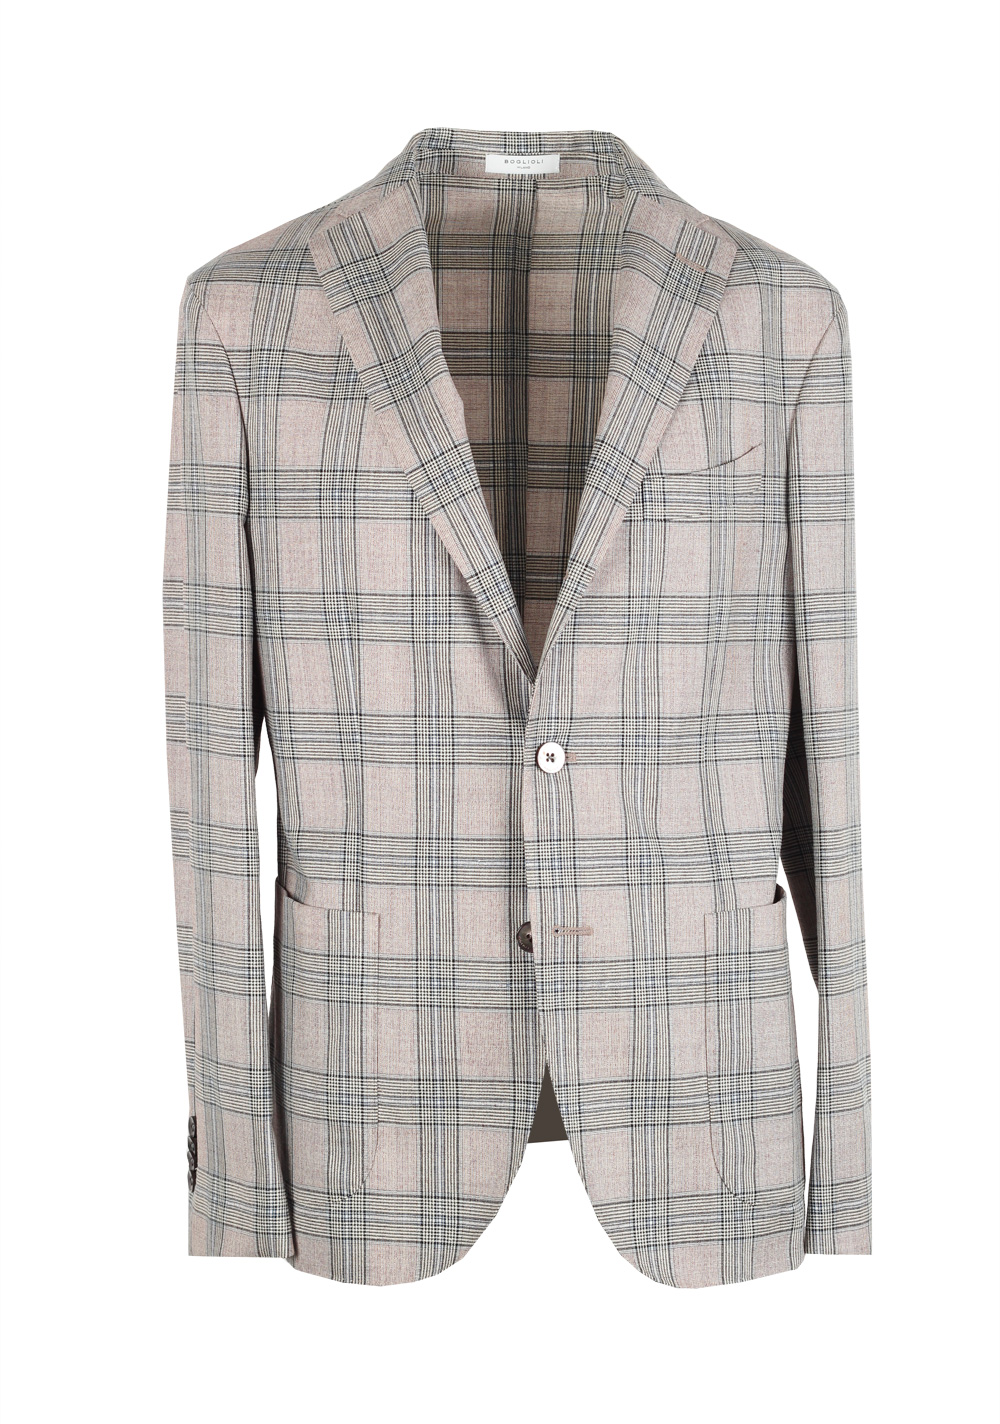 Boglioli K Jacket Beige Checked Suit Size 48 / 38R U.S. | Costume Limité